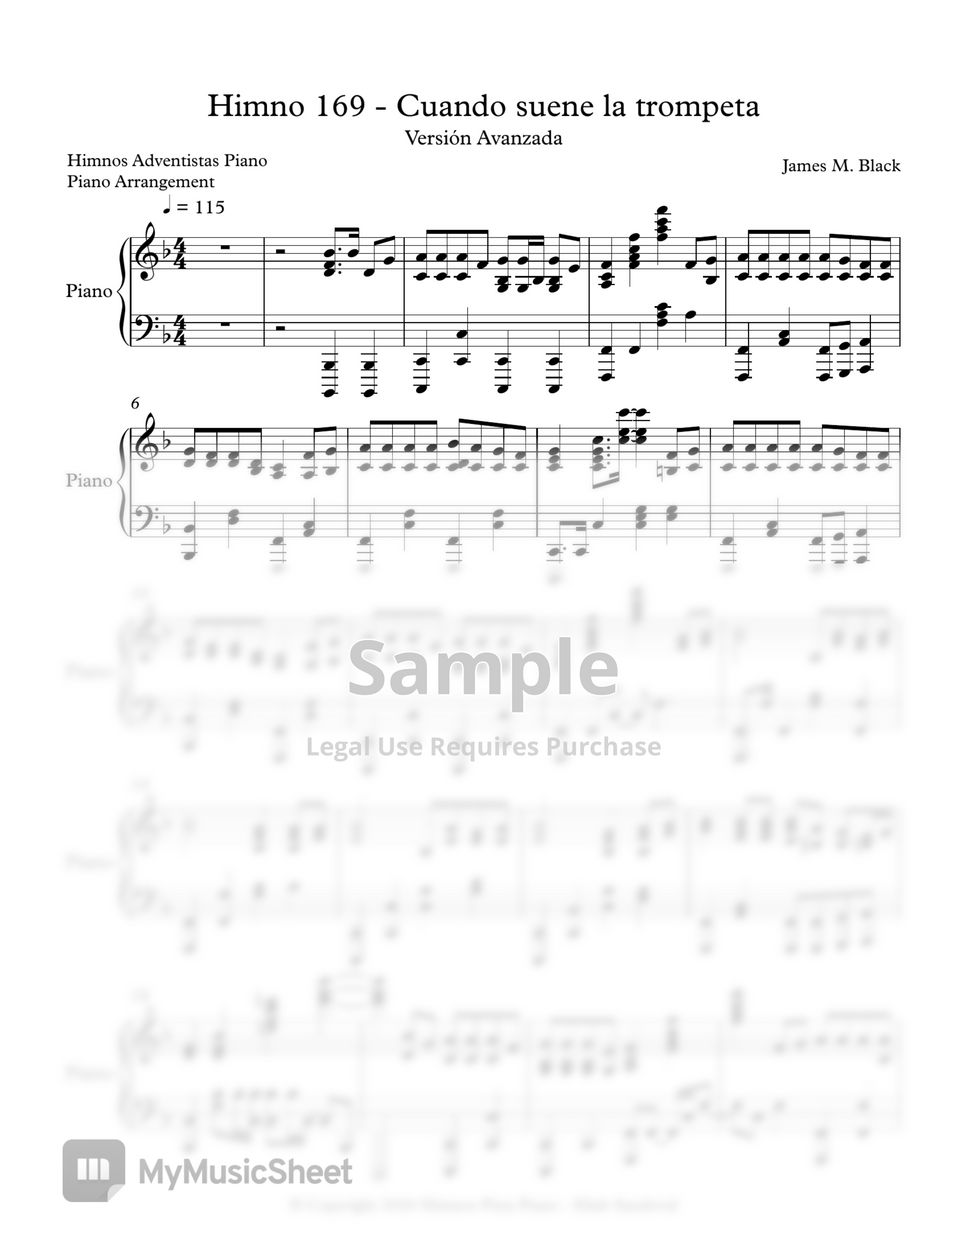 Himnario Adventista - Cuando suene la trompeta - Avanzada (Himno 169) by Himnos Pista Piano